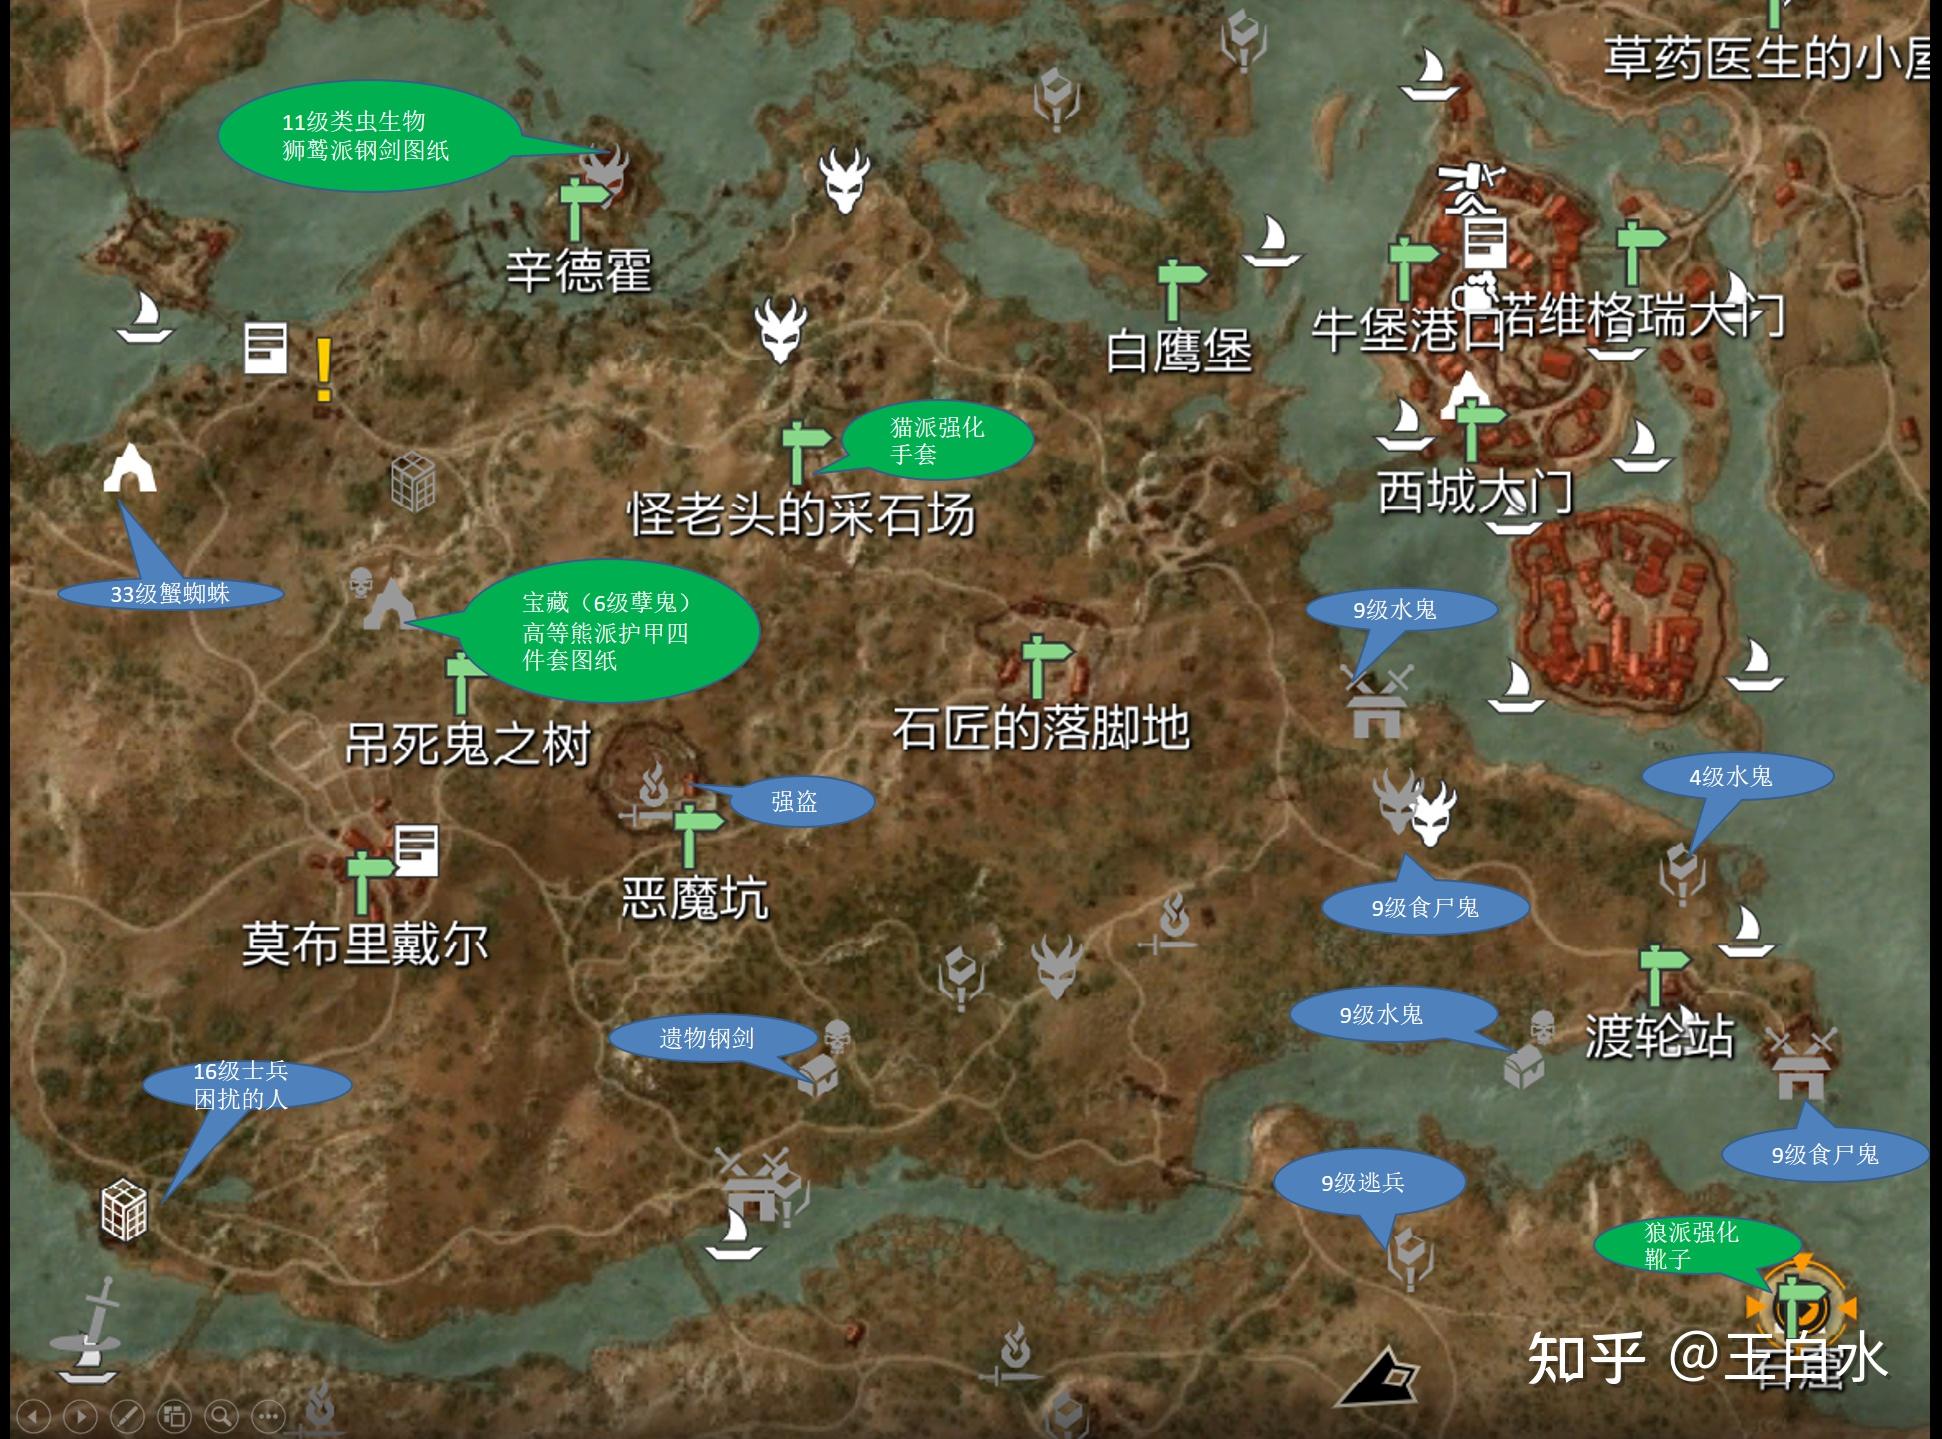 【巫师3】全地图标记攻略 慢慢更新